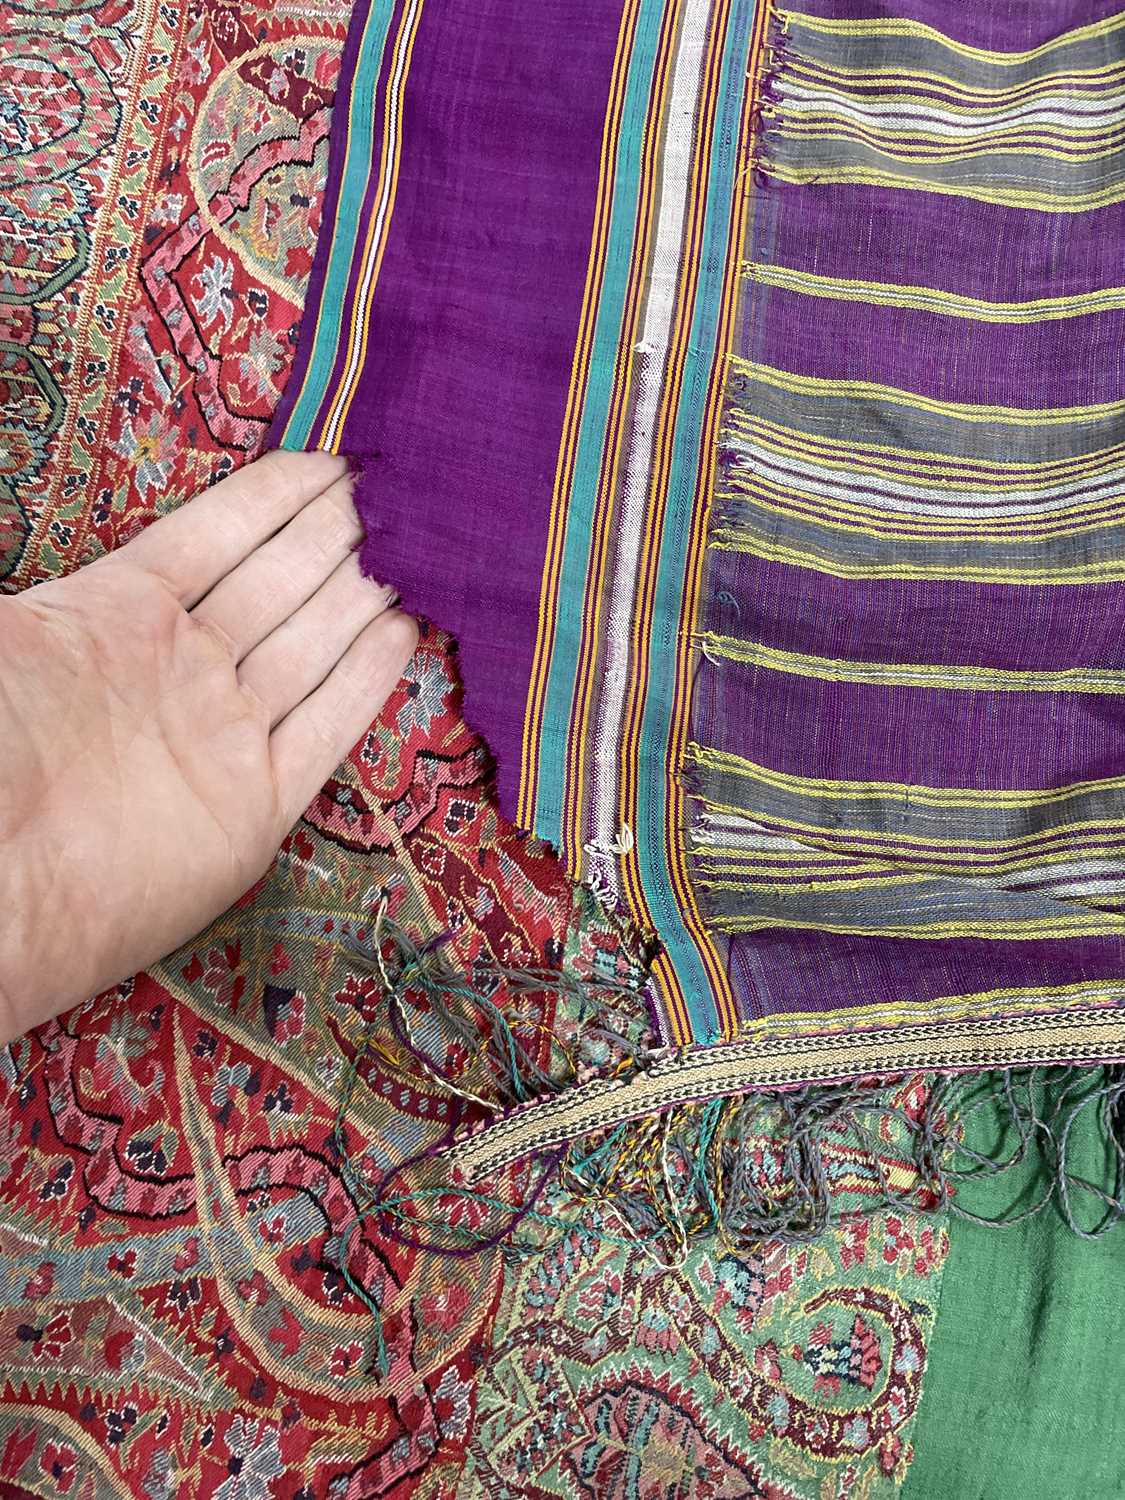 A Kashmir shawl - Image 18 of 20